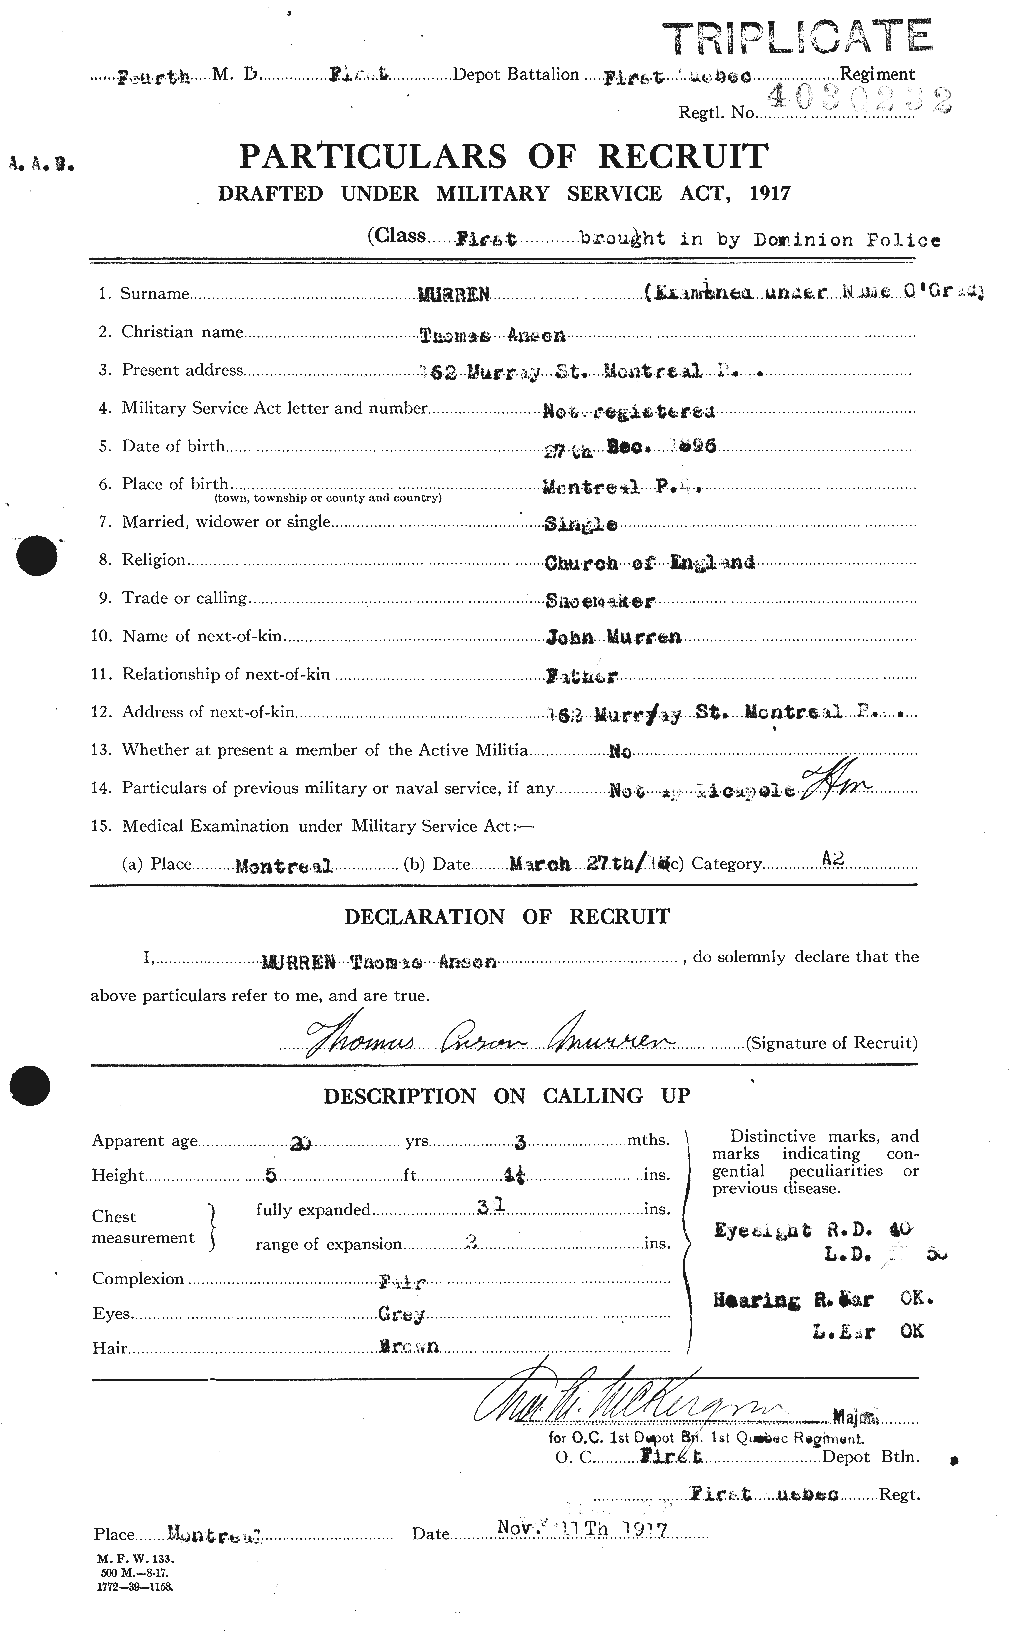 MURREN, THOMAS ANSON, OGRADY, THOMAS ANSON (AKA) 1896-12-27